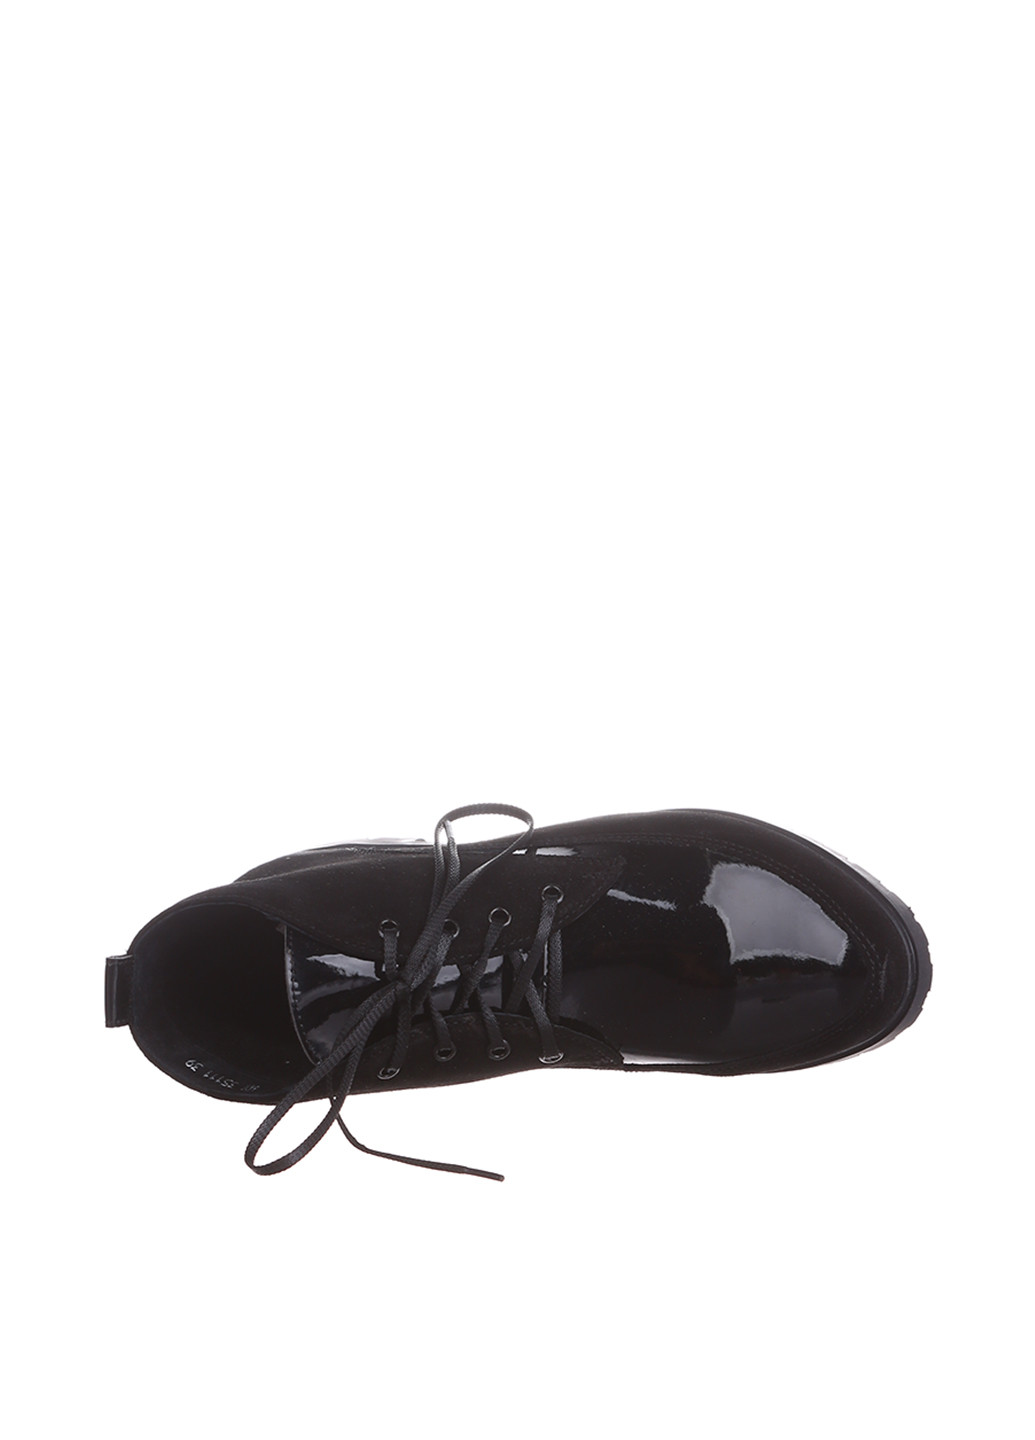 Осенние ботинки In Max лаковые из искусственной кожи